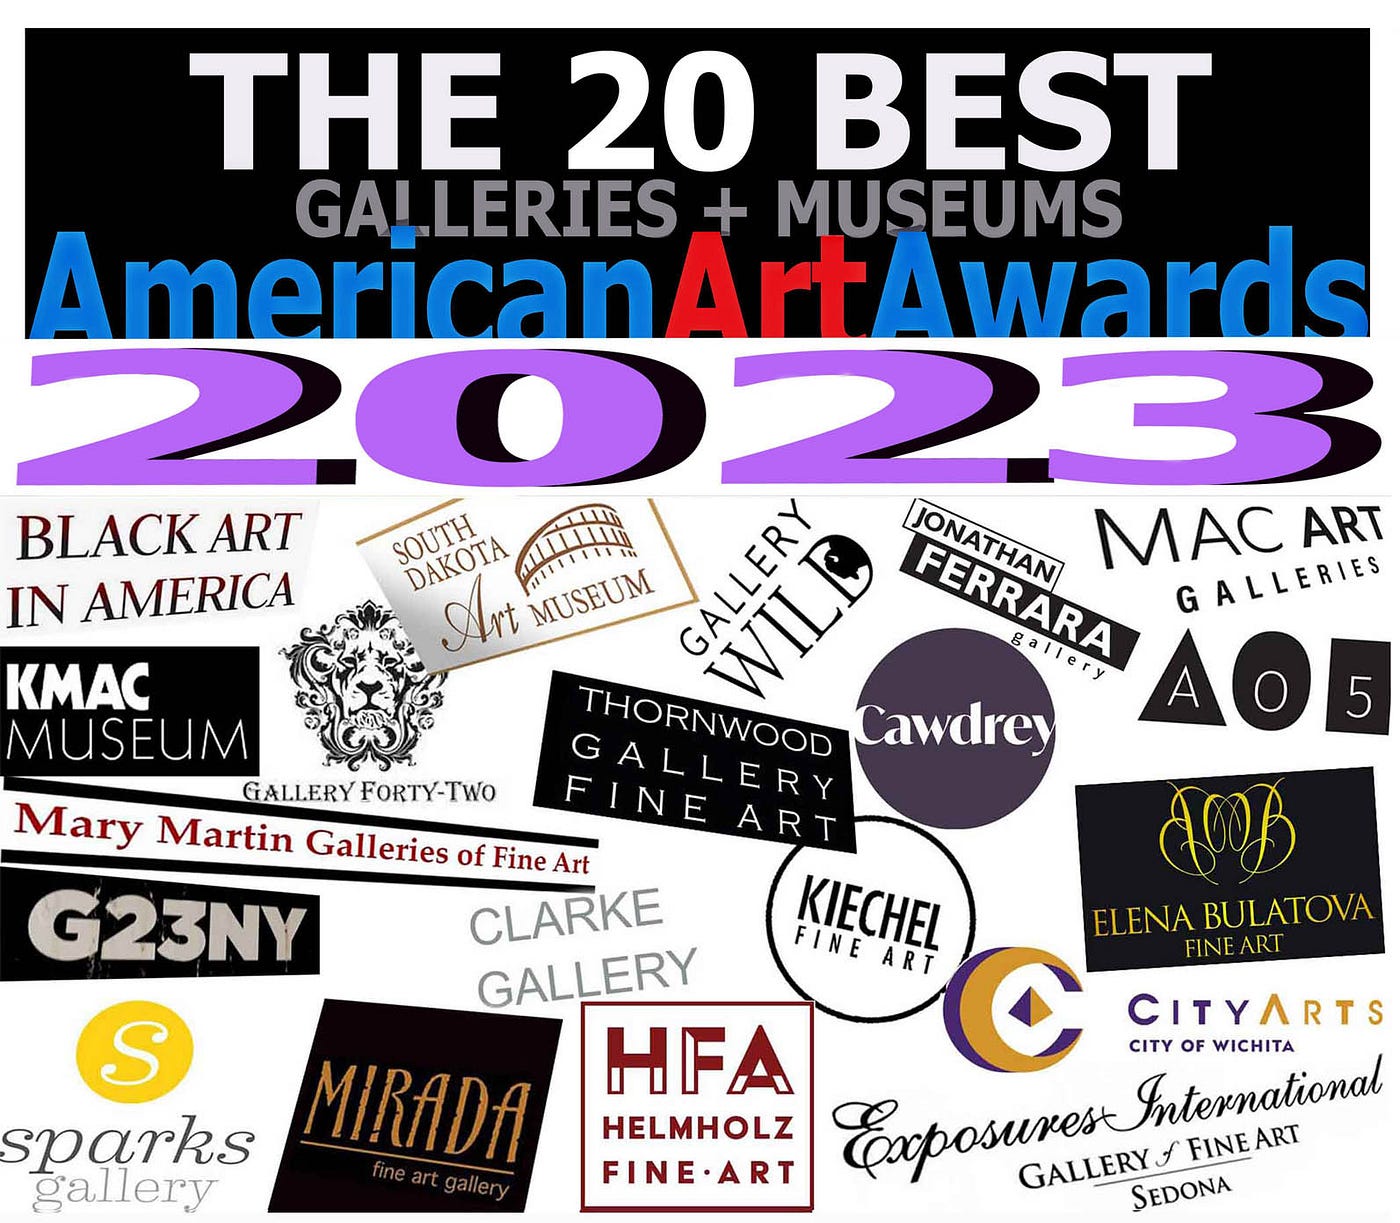 10 American Art Galleries To Know in 2020 - Artsper Magazine